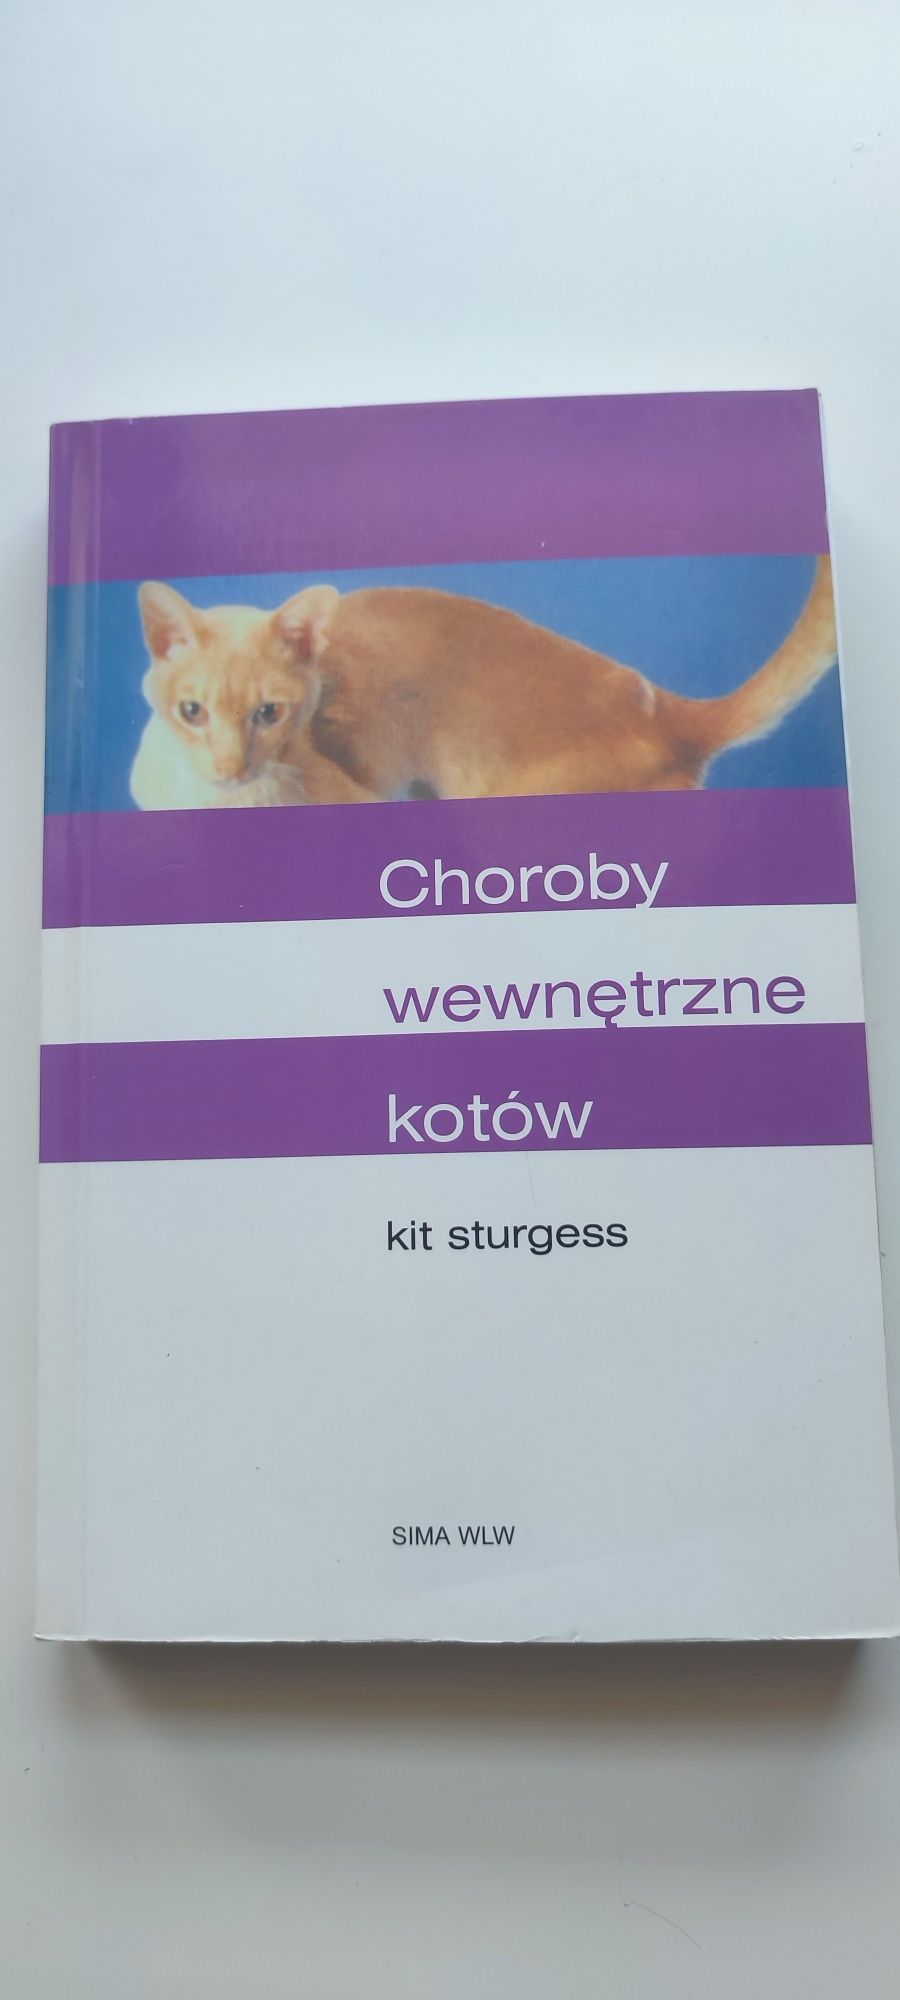 Choroby wewnętrzne kotów K.Sturgess